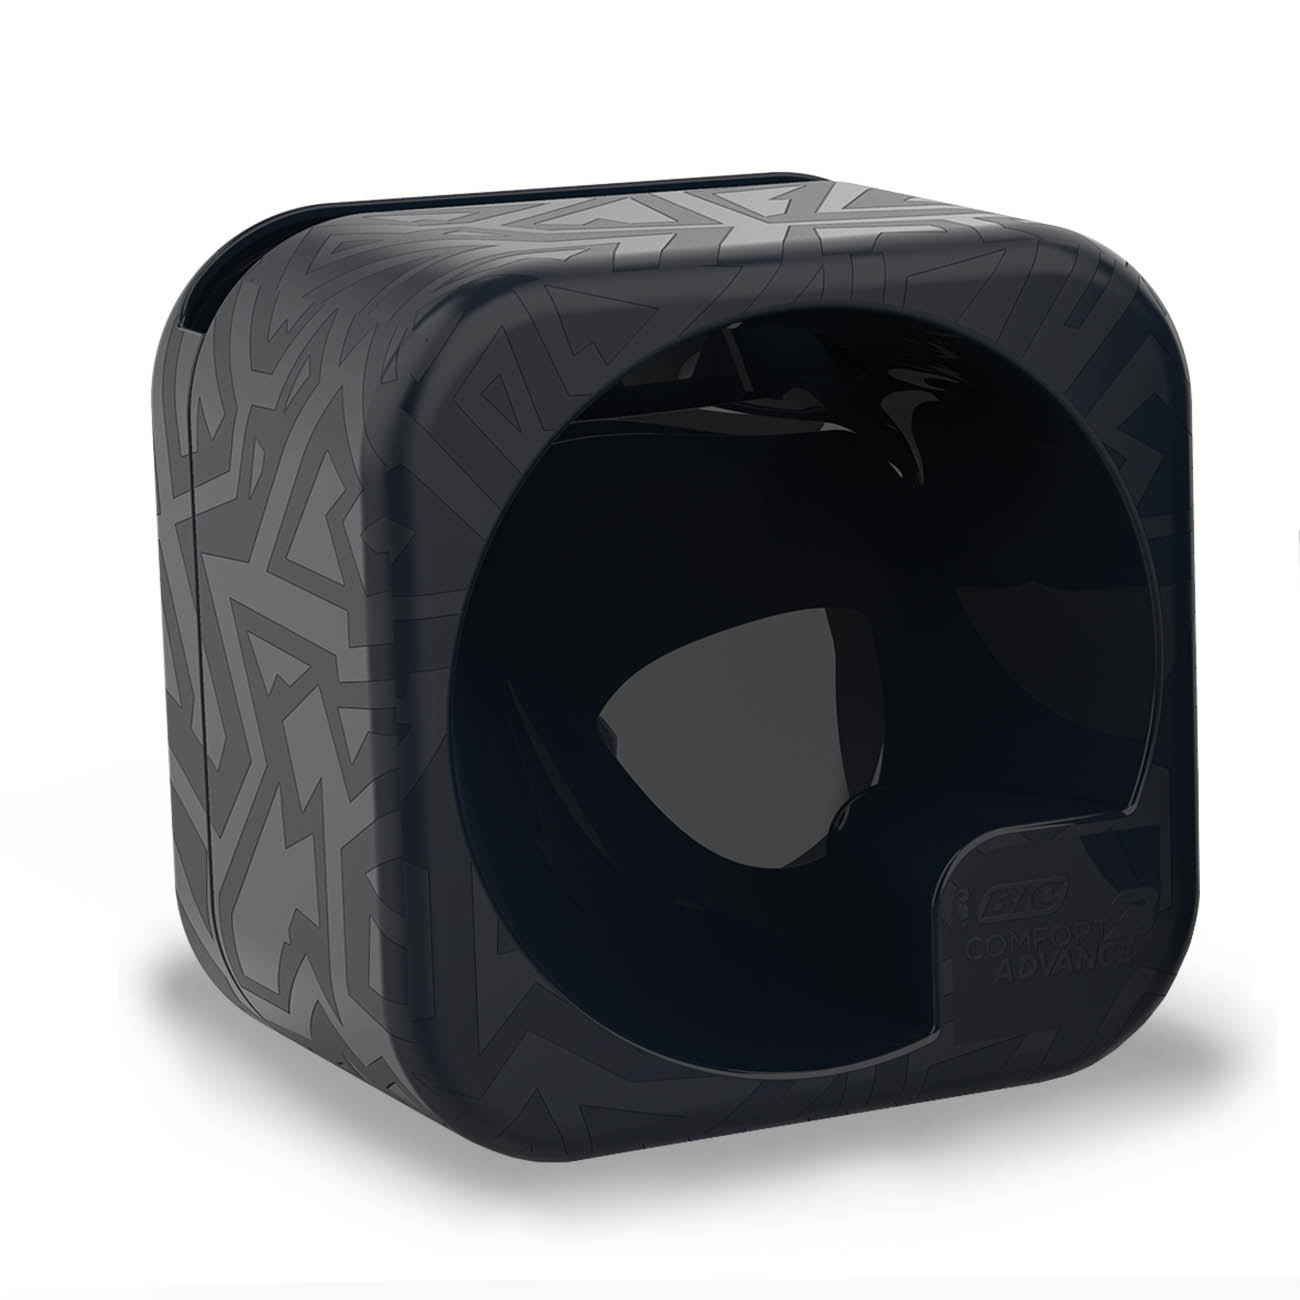 Kit Promocional Comfort 3 Black + Caixa amplificadora para celular